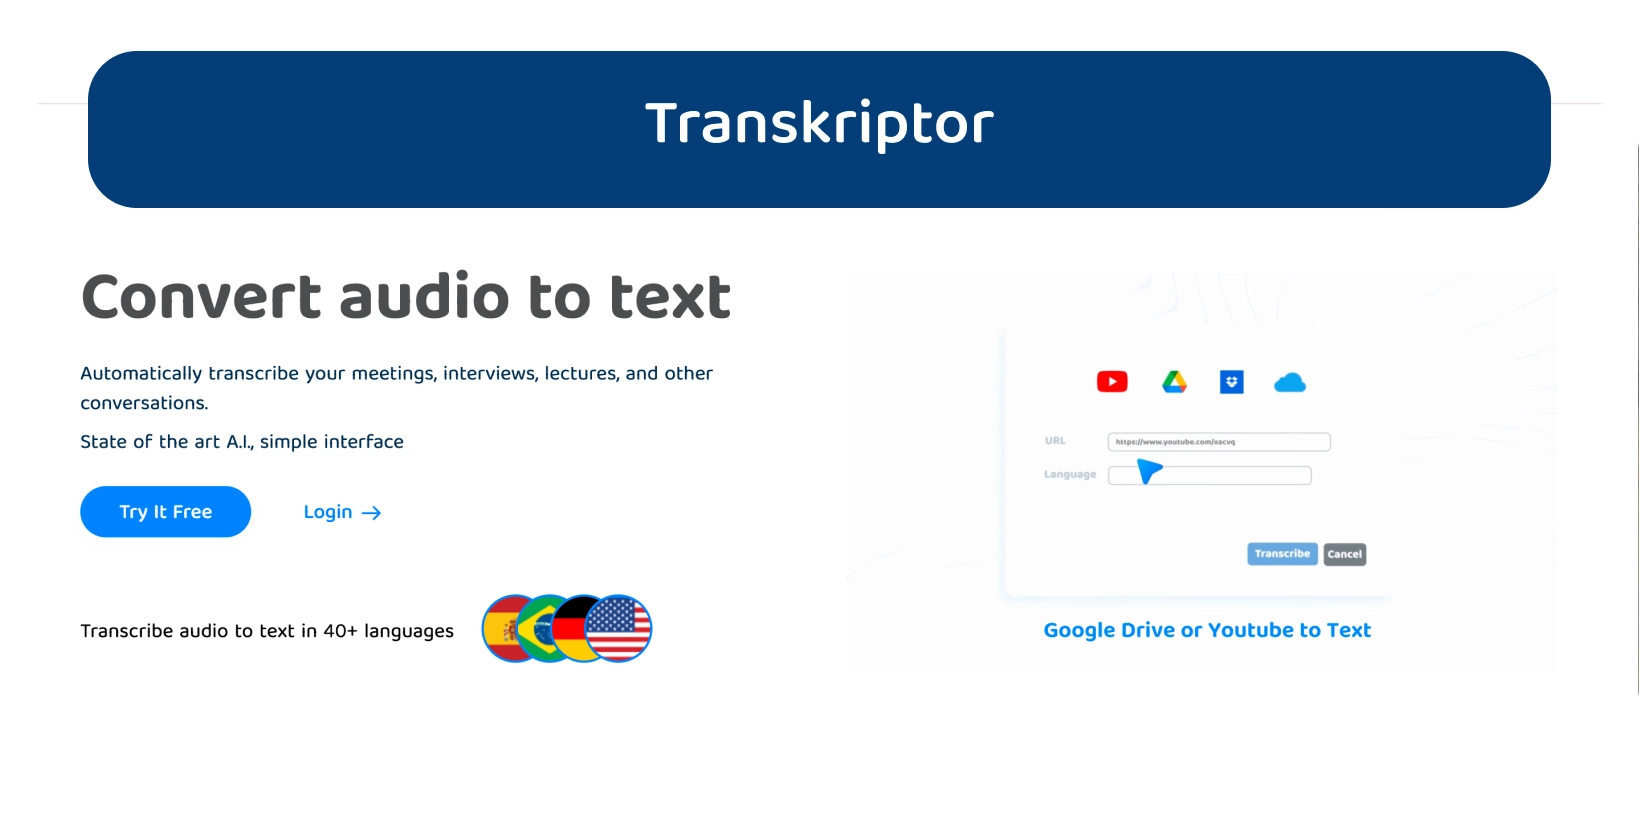 O painel da Transkriptor apresenta seus recursos de conversão de áudio em texto para uma transcrição eficiente.